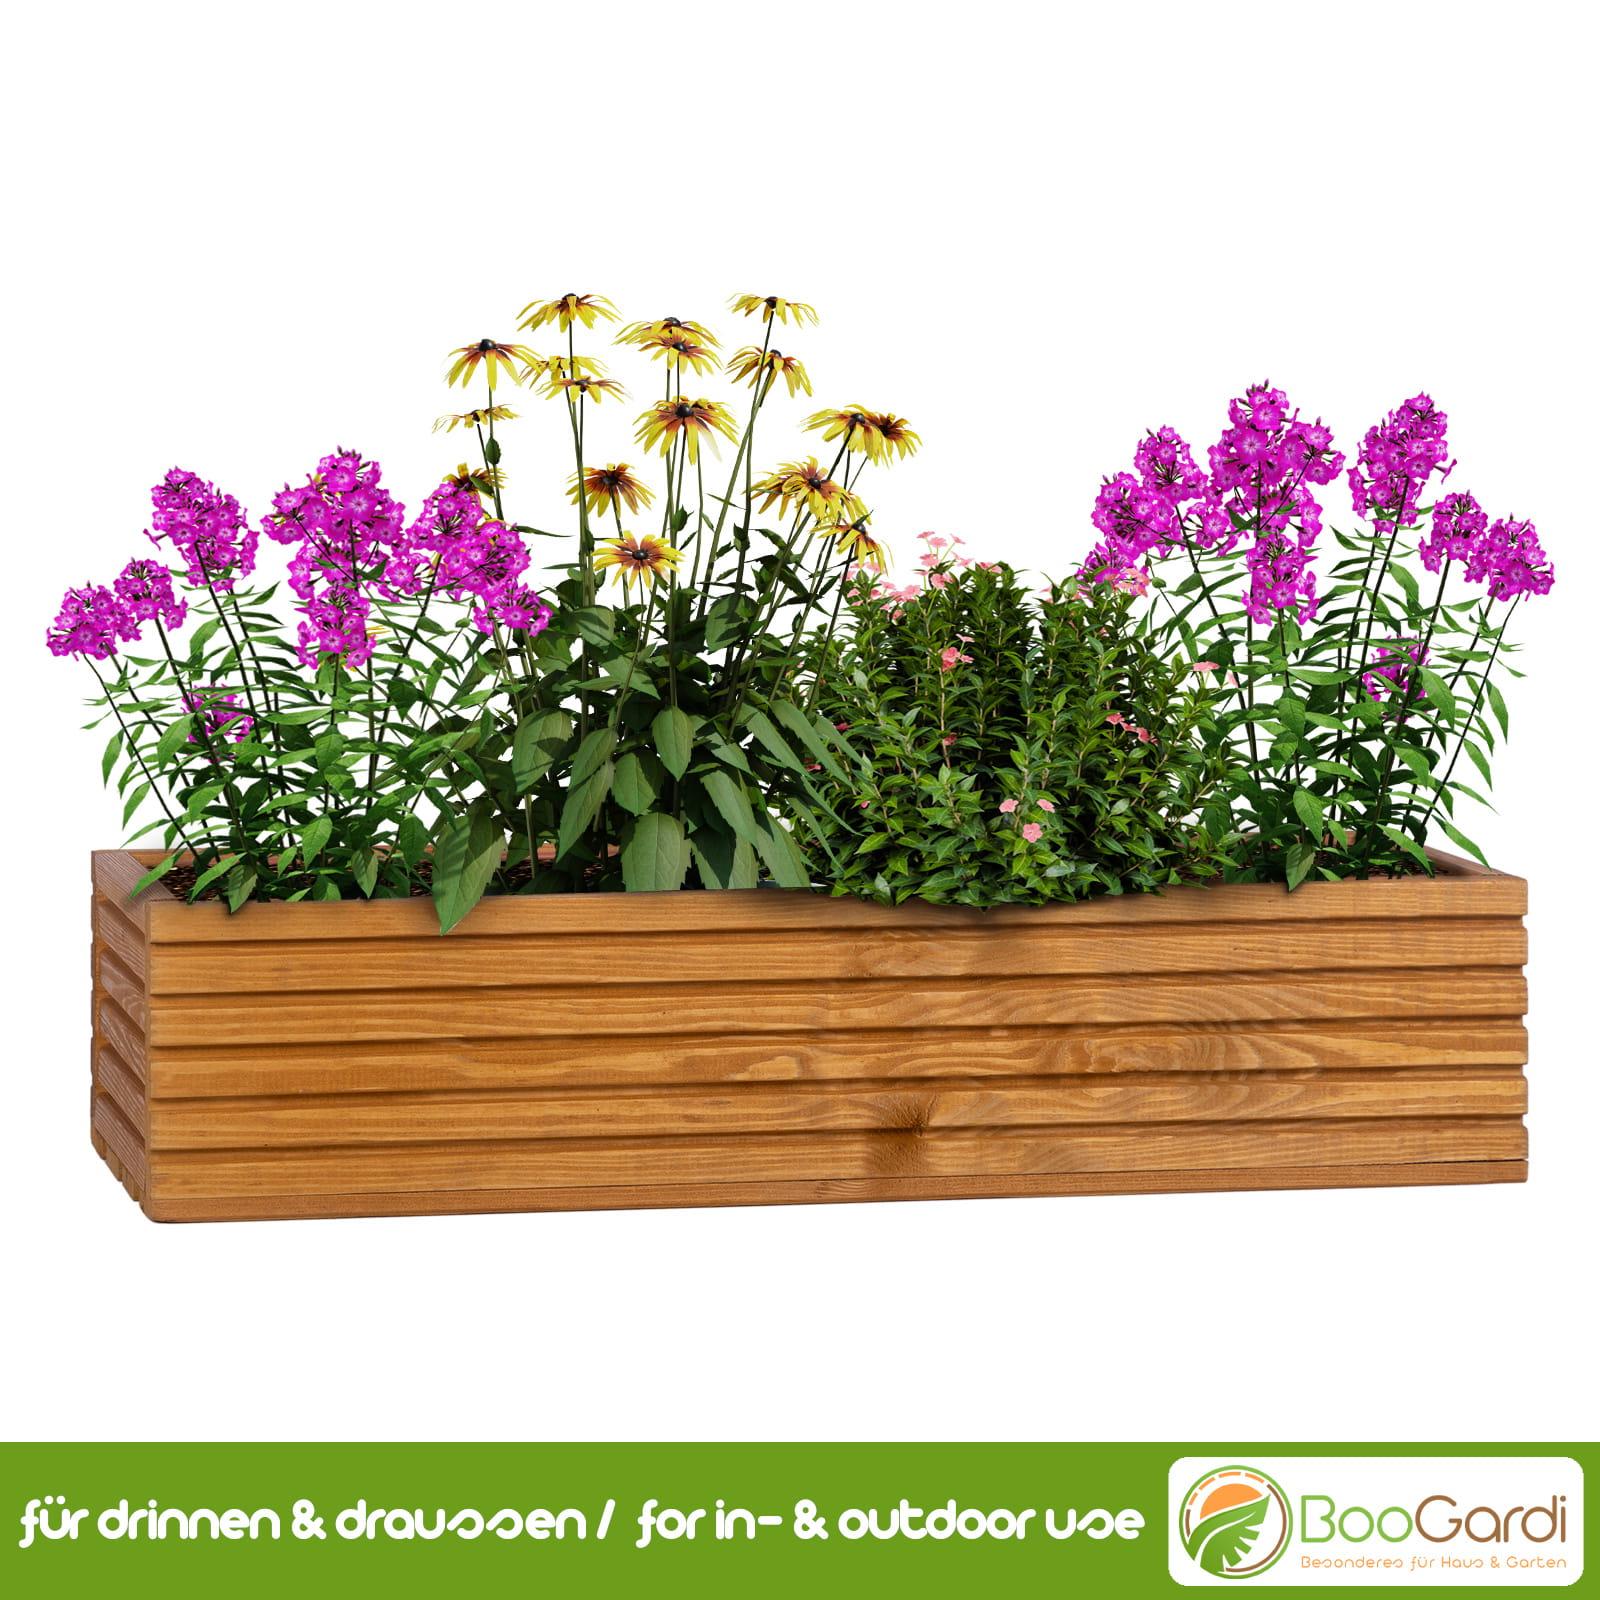 Blumenkasten mit Kunststoffeinsatz Haus & | Garten - BooGardi